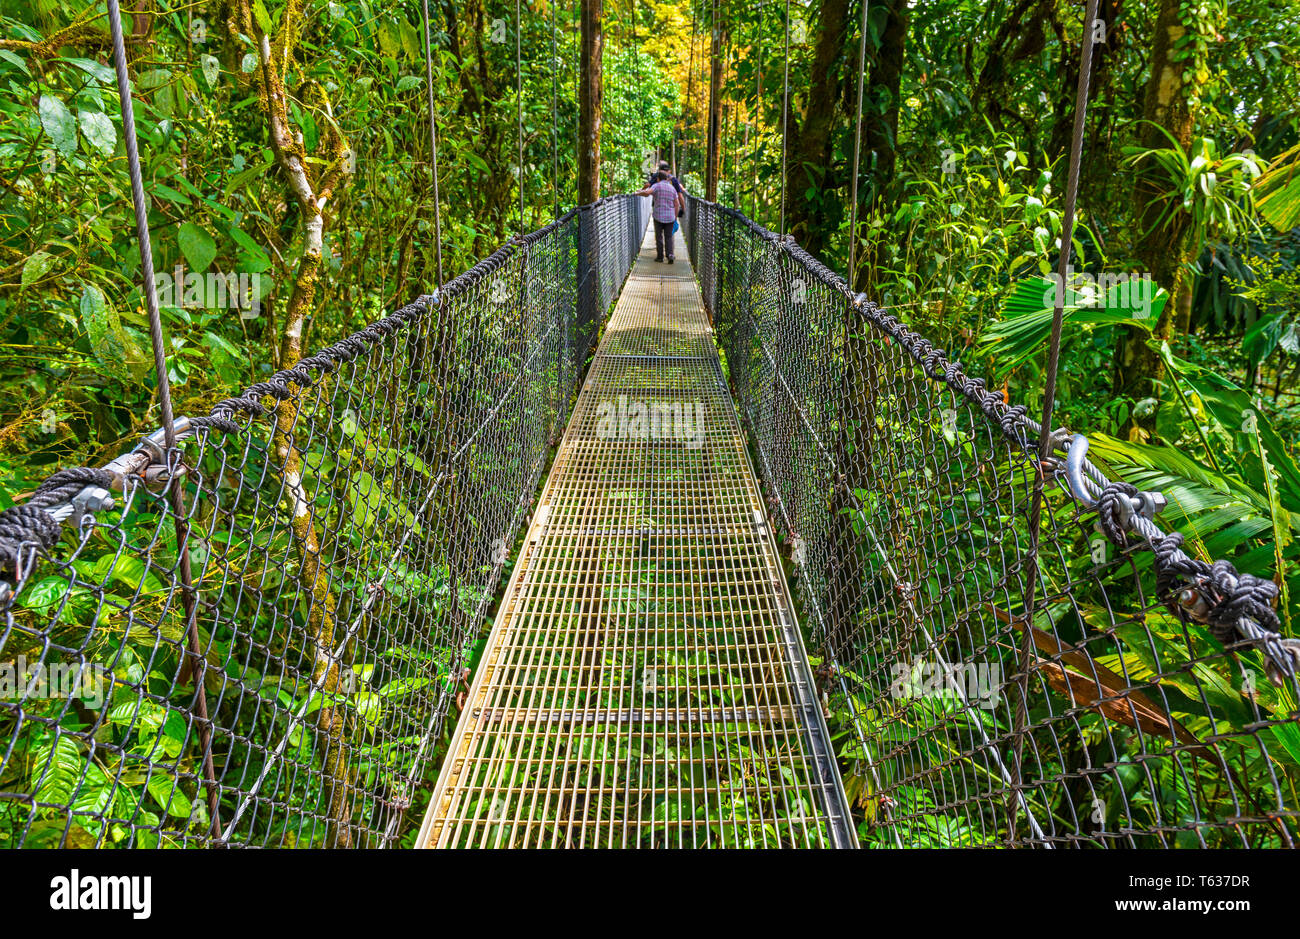 La gente che camminava sul vulcano Arenal ponti sospesi nella foresta pluviale tropicale del Costa Rica, America centrale. Foto Stock